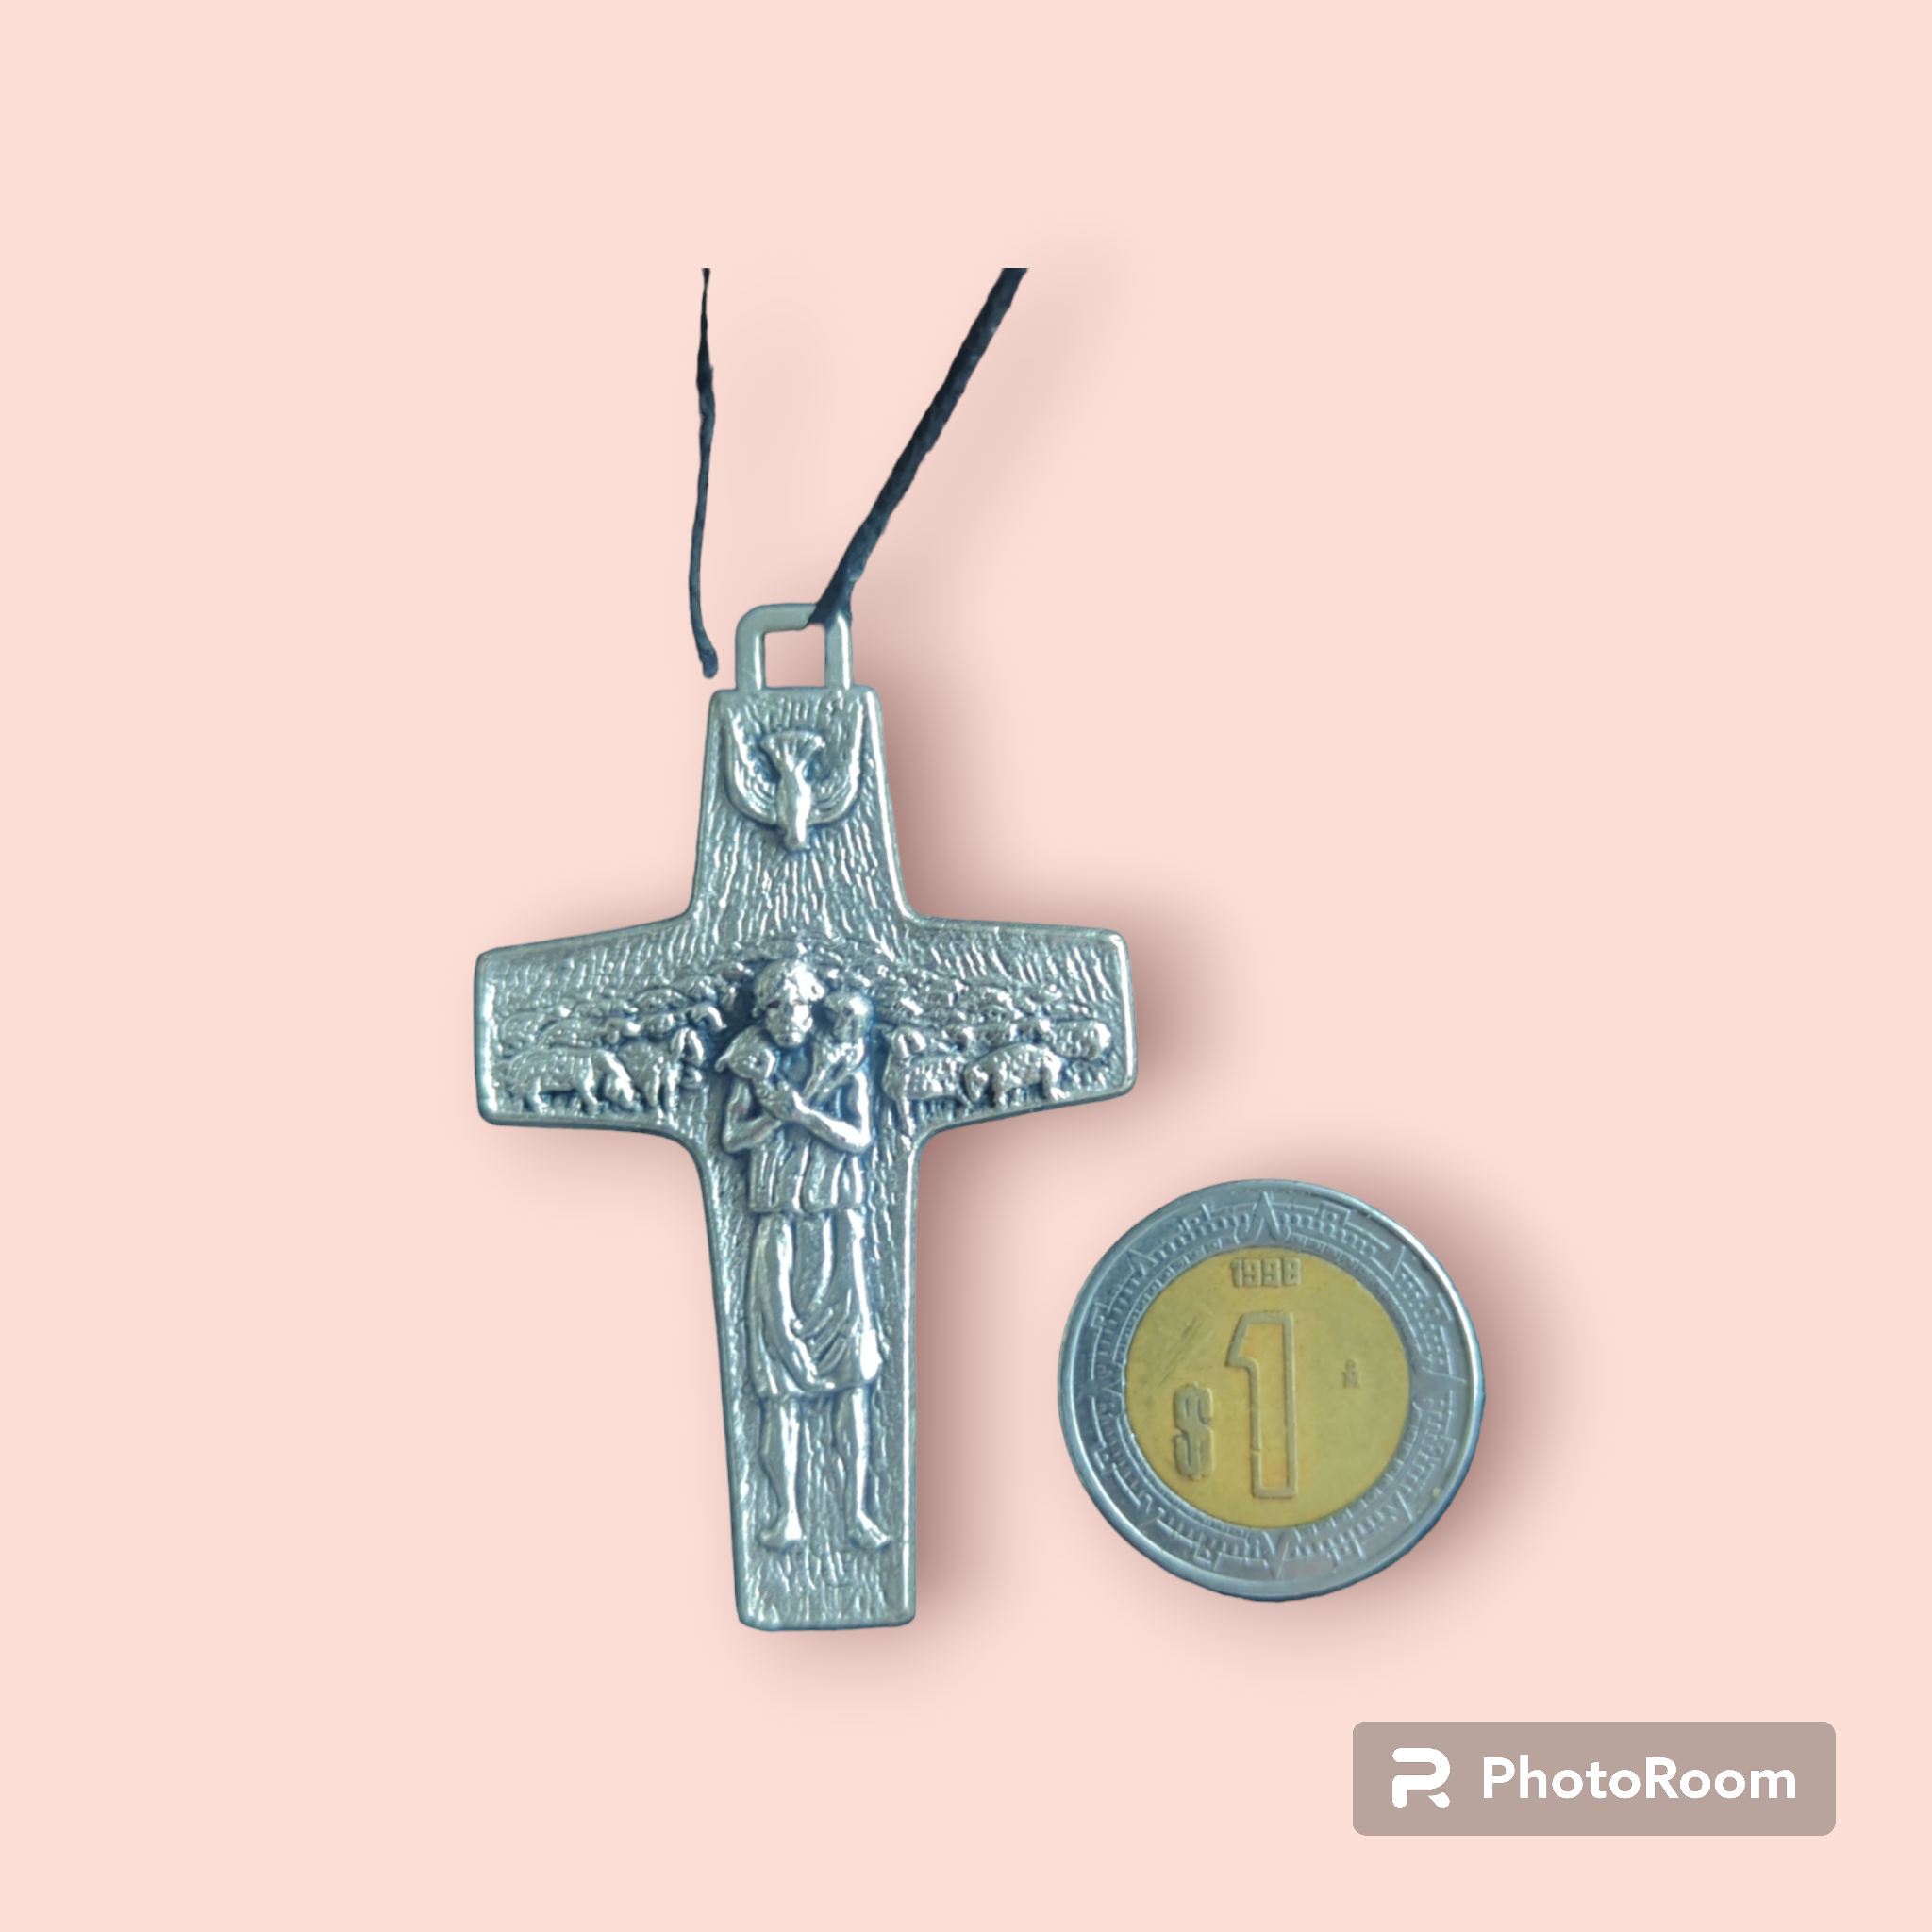 La  Auténtica Cruz del Buen Pastor: Un Símbolo de Humildad y Misericordia. Tamaño Grande